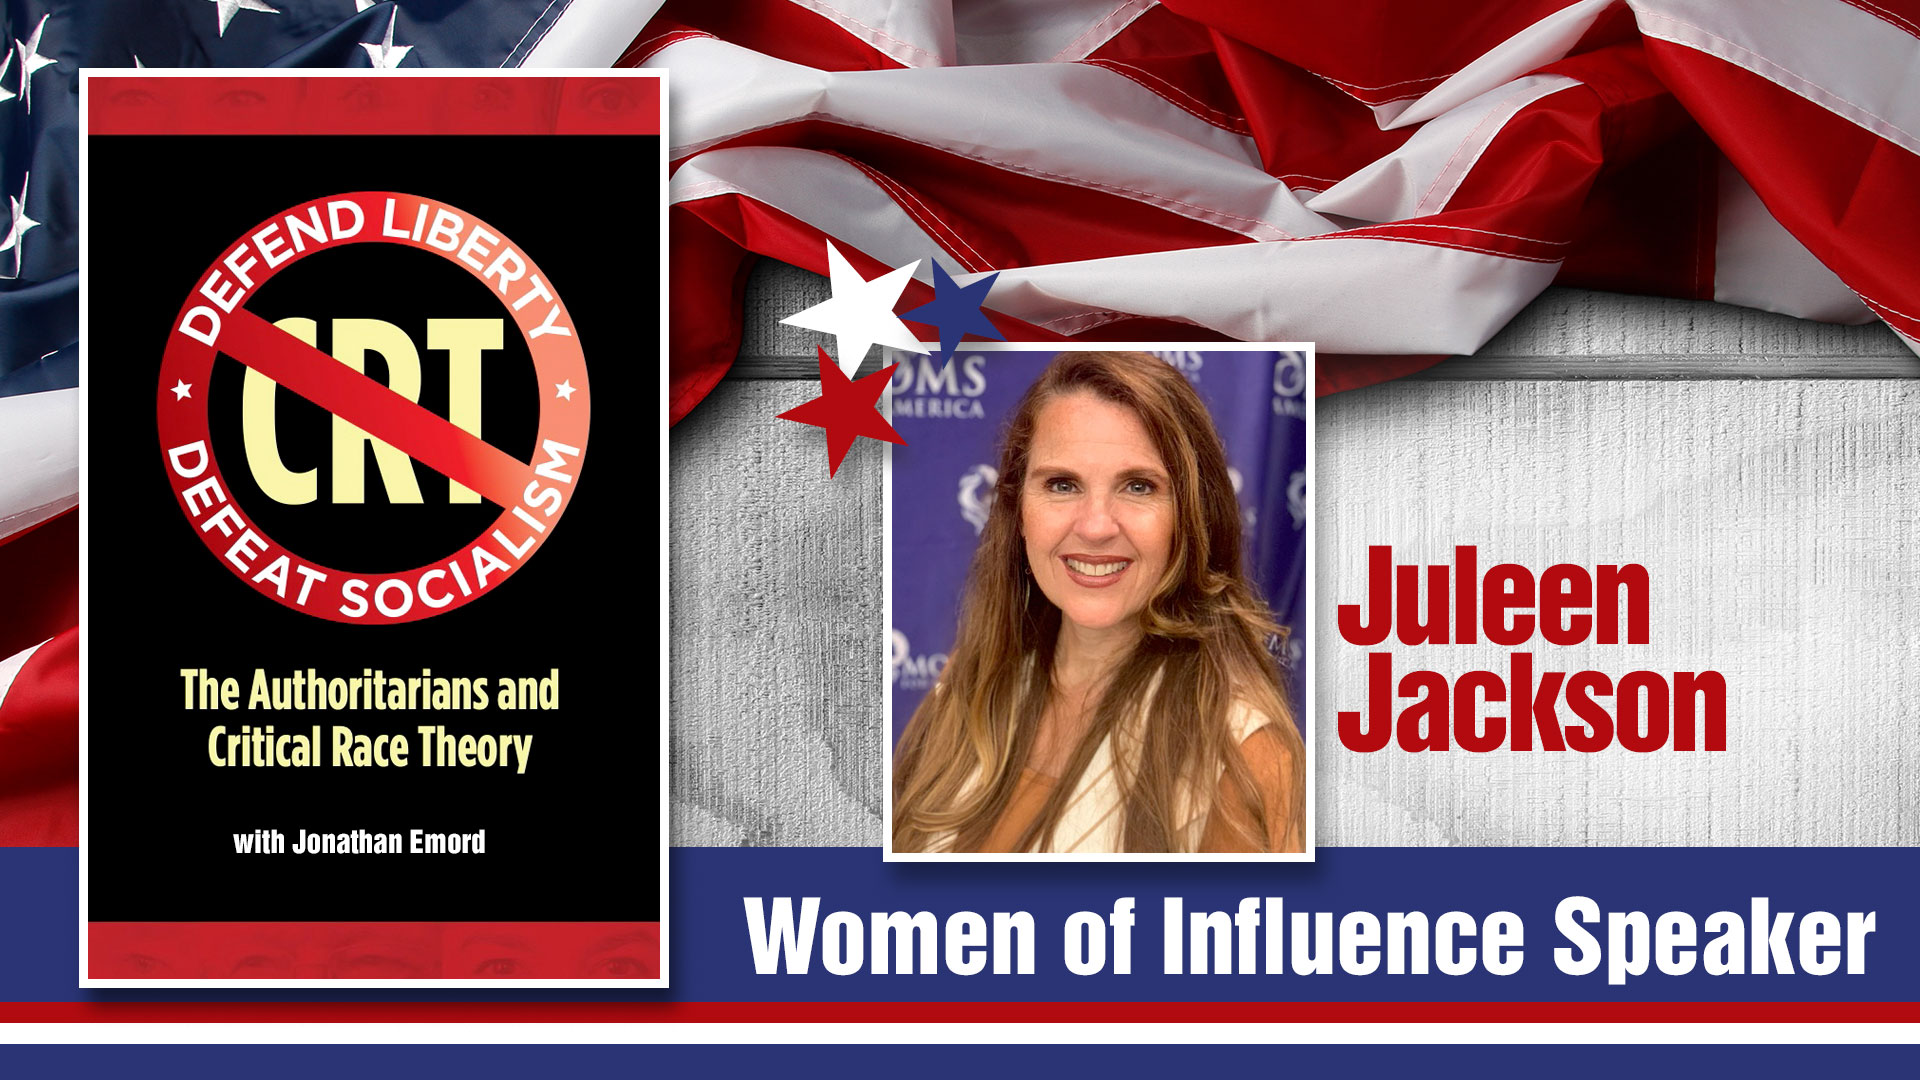 Juleen Jackson - Women of Influence Speaker